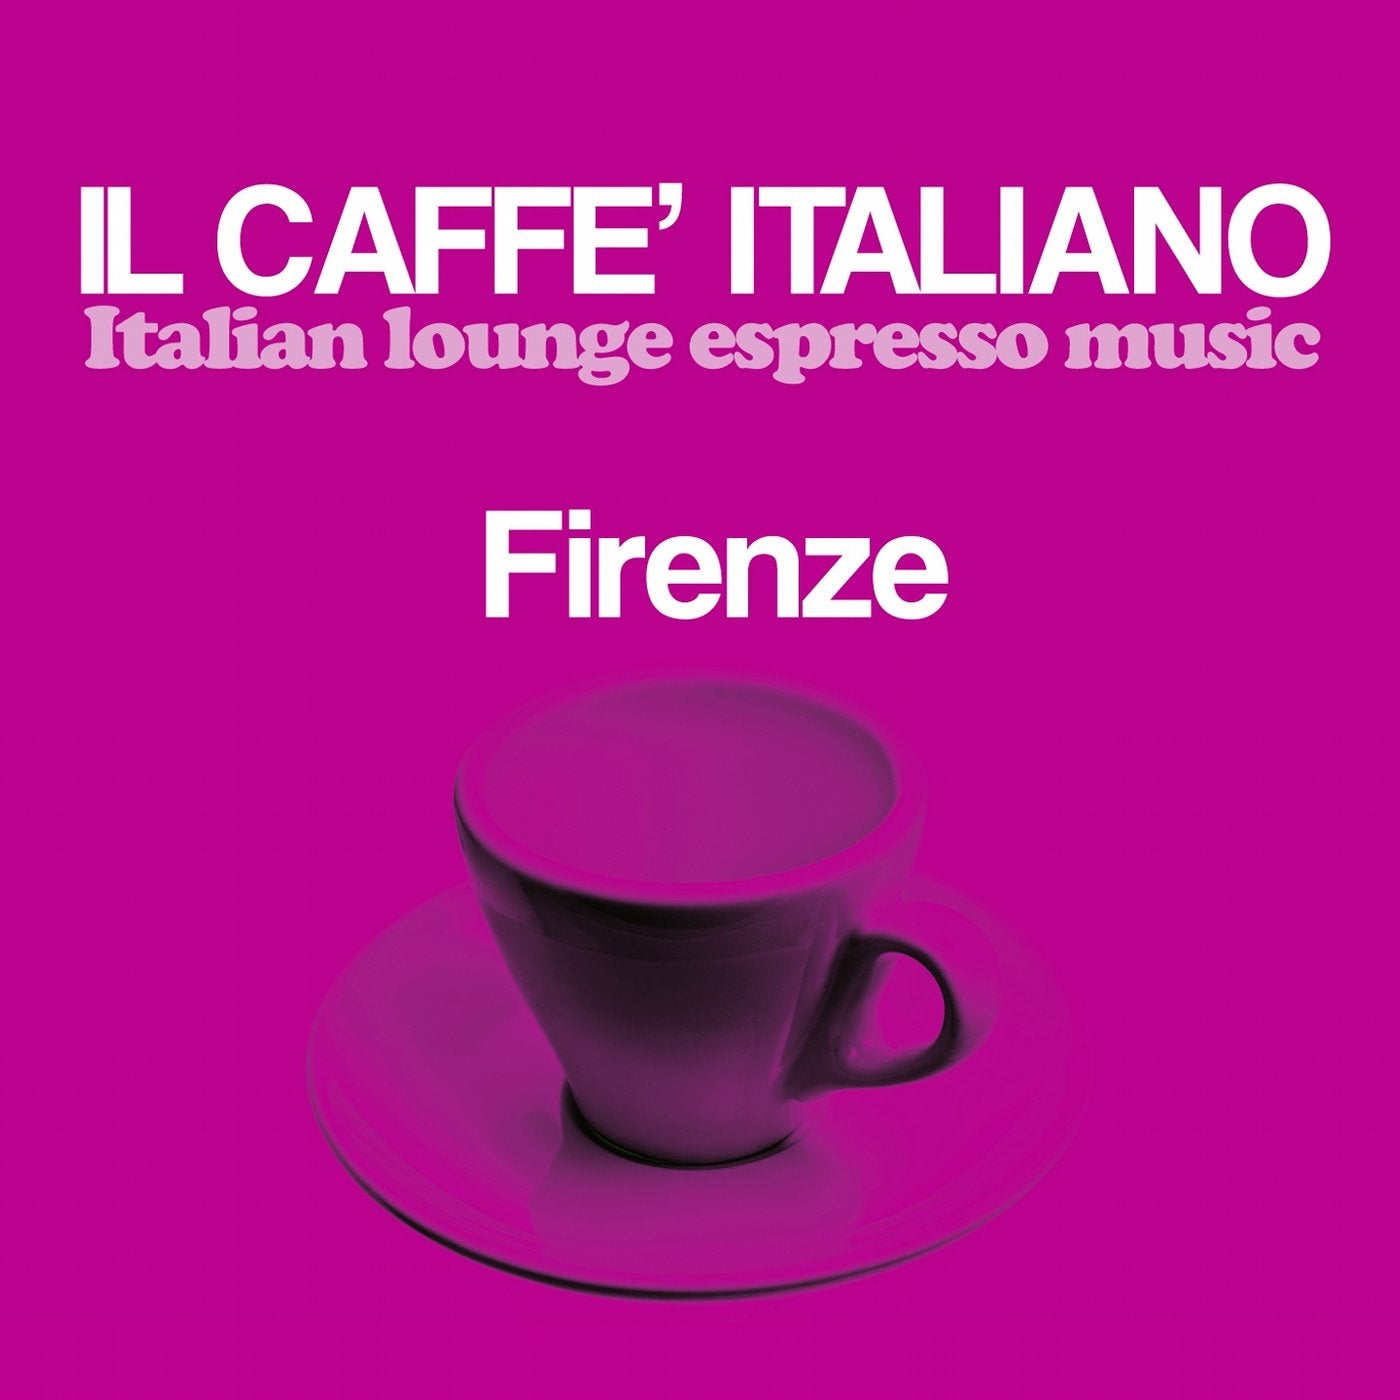 Il caffe italiano: Firenze (Italian Lounge Espresso Music)